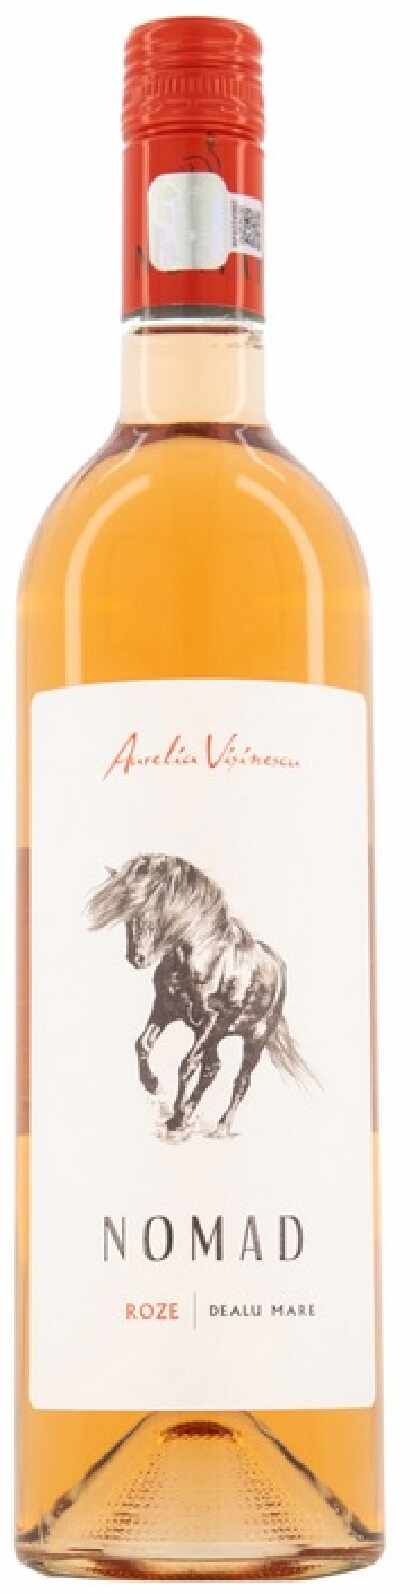 Vin rose - Aurelia Visinescu - Nomad, sec, 2020 | Aurelia Visinescu